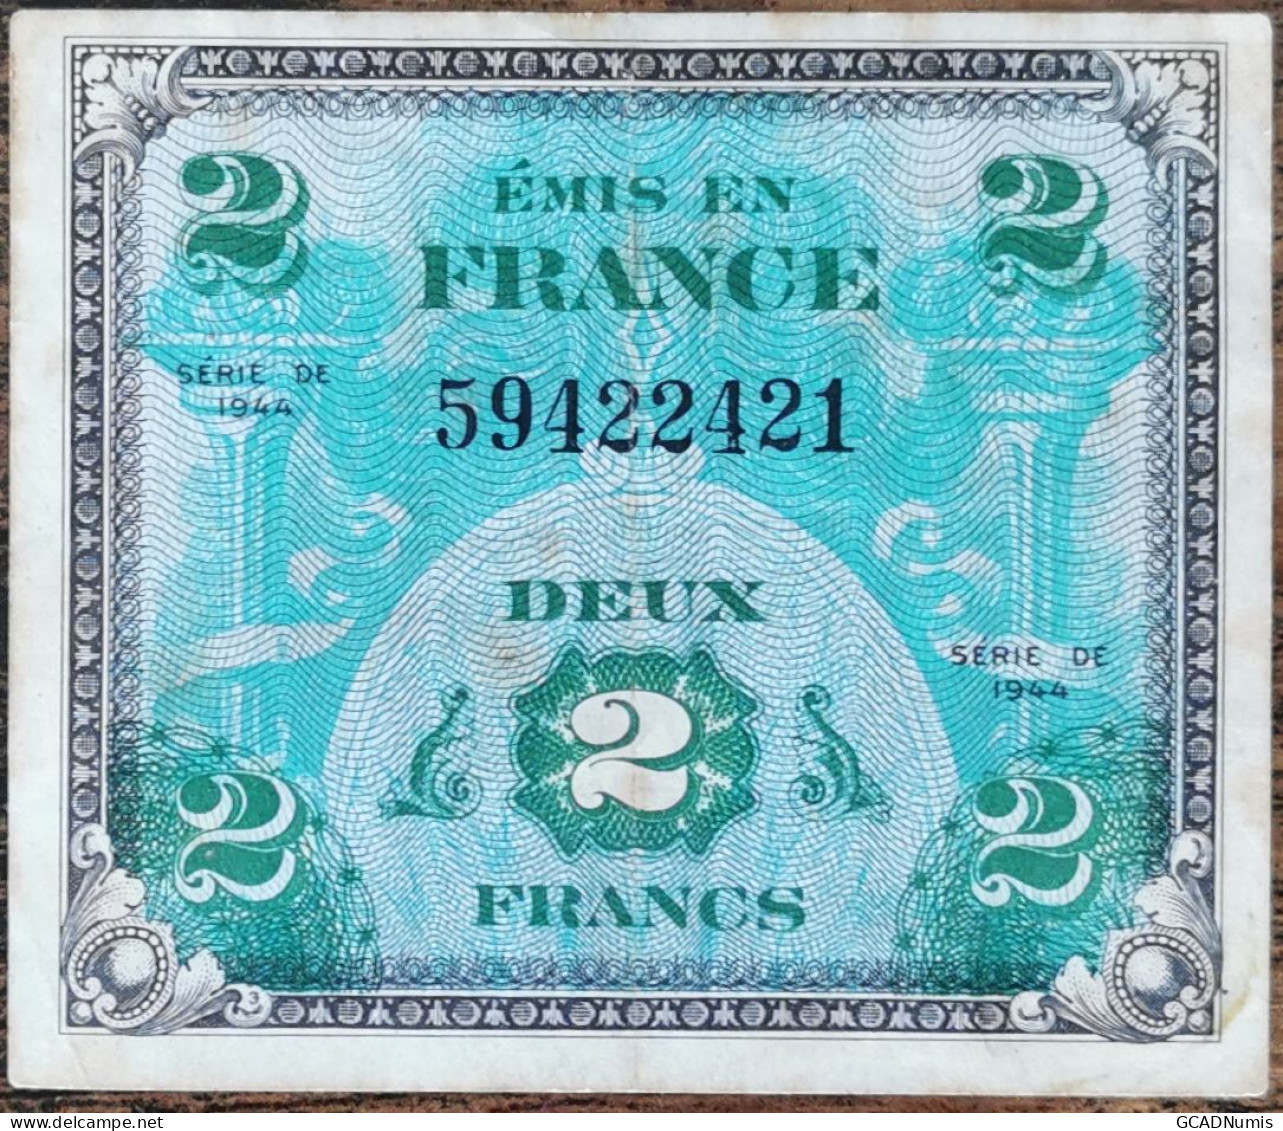 Billet 2 Francs 1944 FRANCE Préparer Par Les USA Pour La Libération 59422421 - 1944 Drapeau/Francia